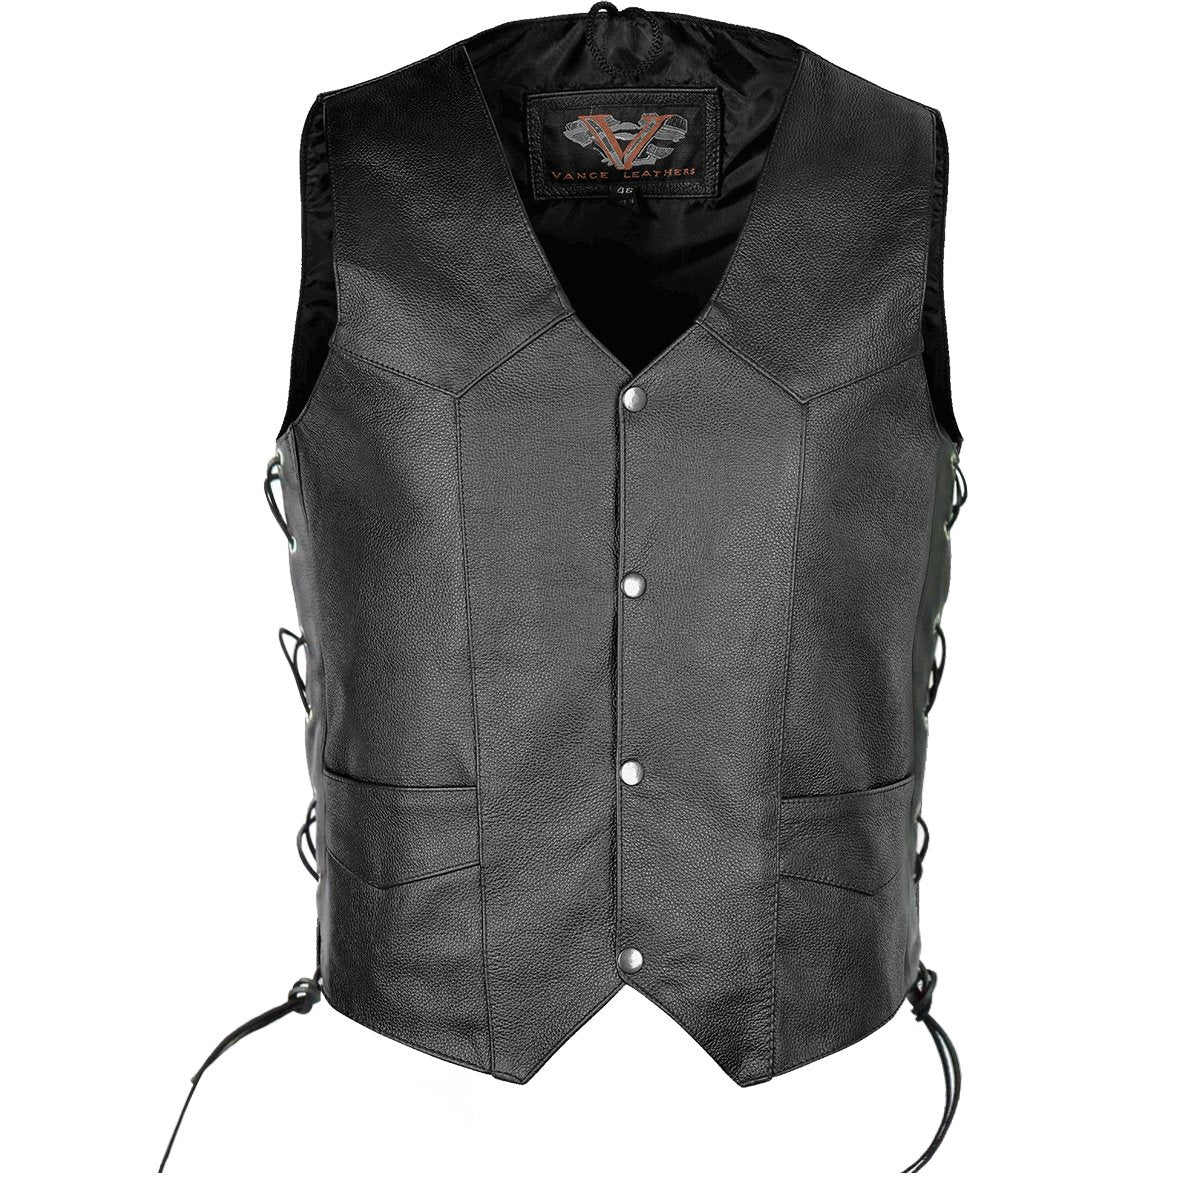 Vance Men's Premium Leather Lace Side Vest with Gun Pocket